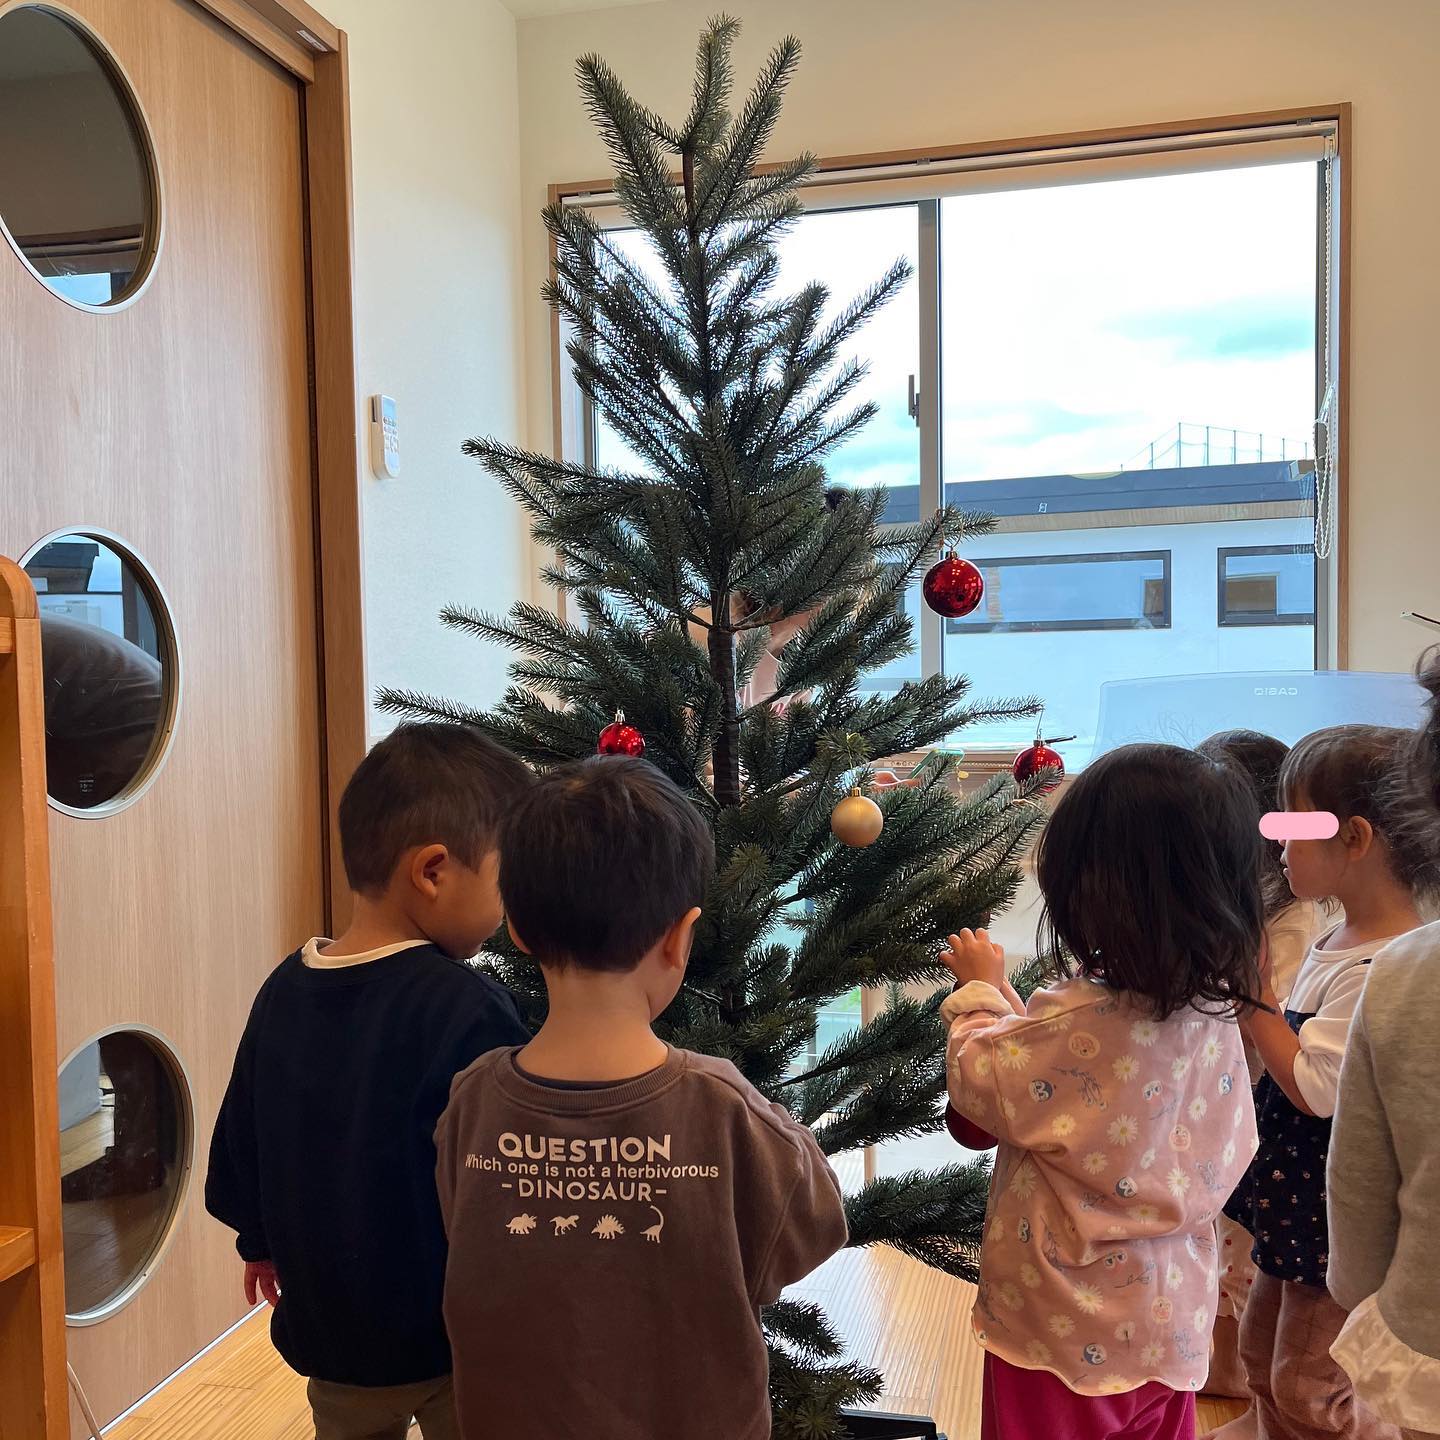 .みんなでクリスマスツリー飾り付けしたよ#神戸市#垂水区#舞多聞#小規模保育園#舞多聞100年の杜#コミュセン舞多聞##子育て#認可保育園#学園都市#クリスマスツリー #クリスマス